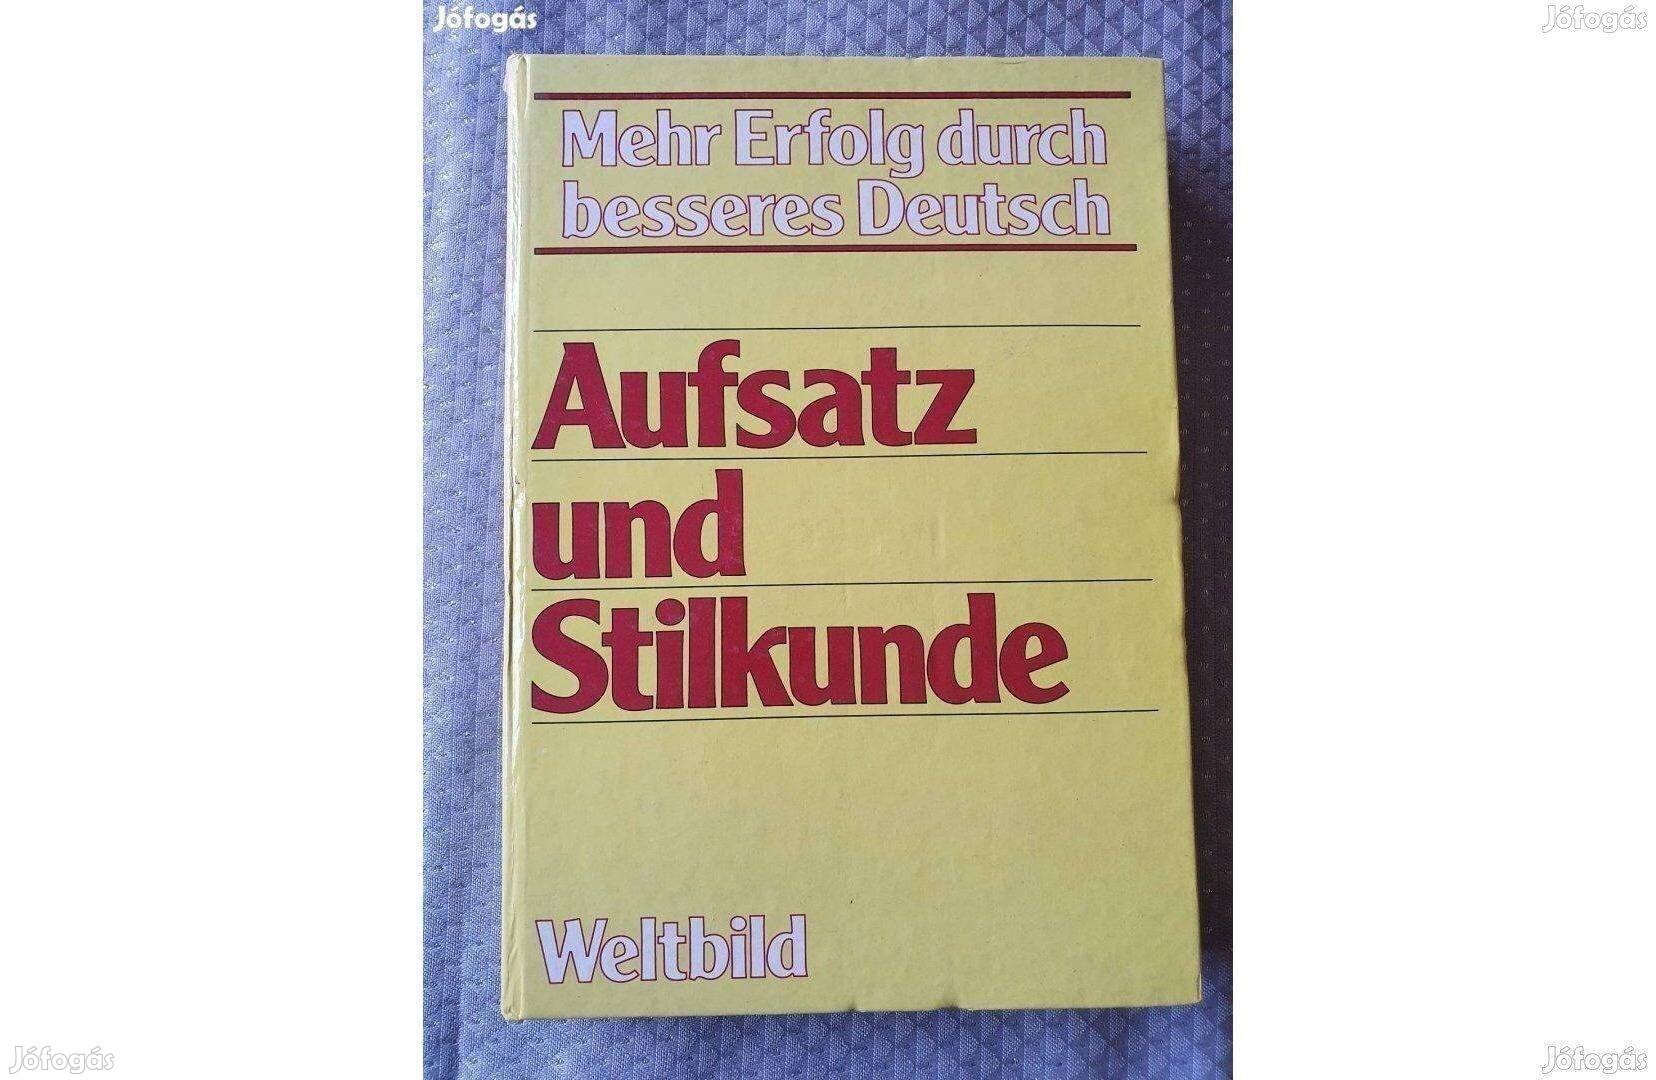 Aufsatz und Stilkunde német nyelvű könyv 1988